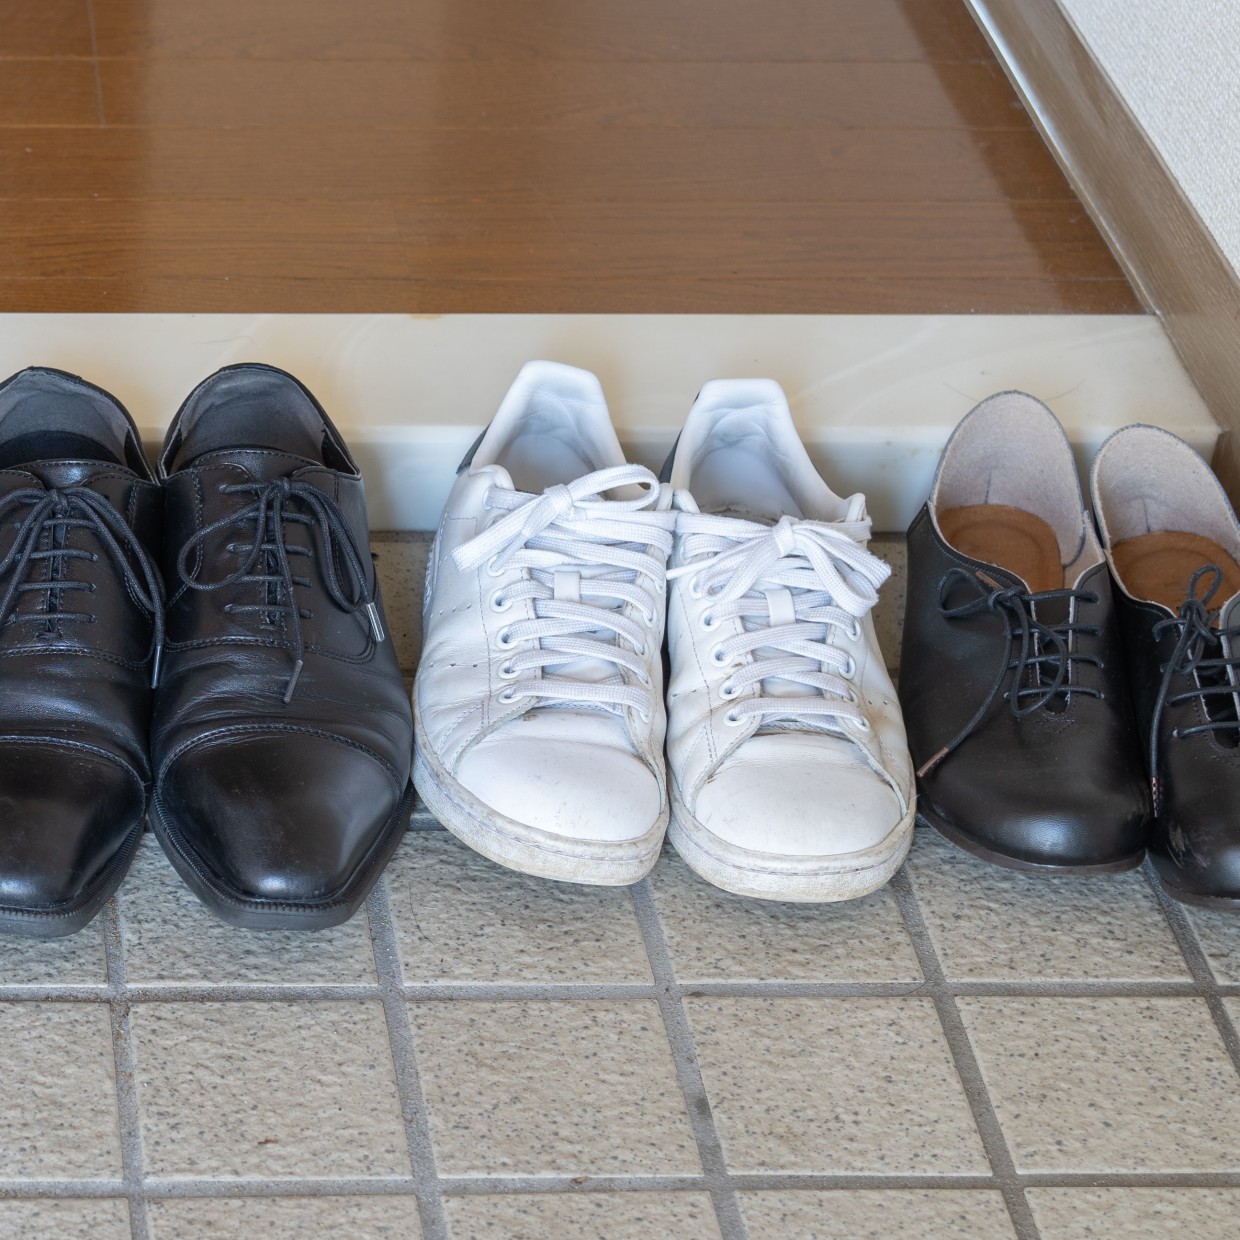  靴の嫌なにおいは解決できる。自宅で簡単にできる「消臭対策」 